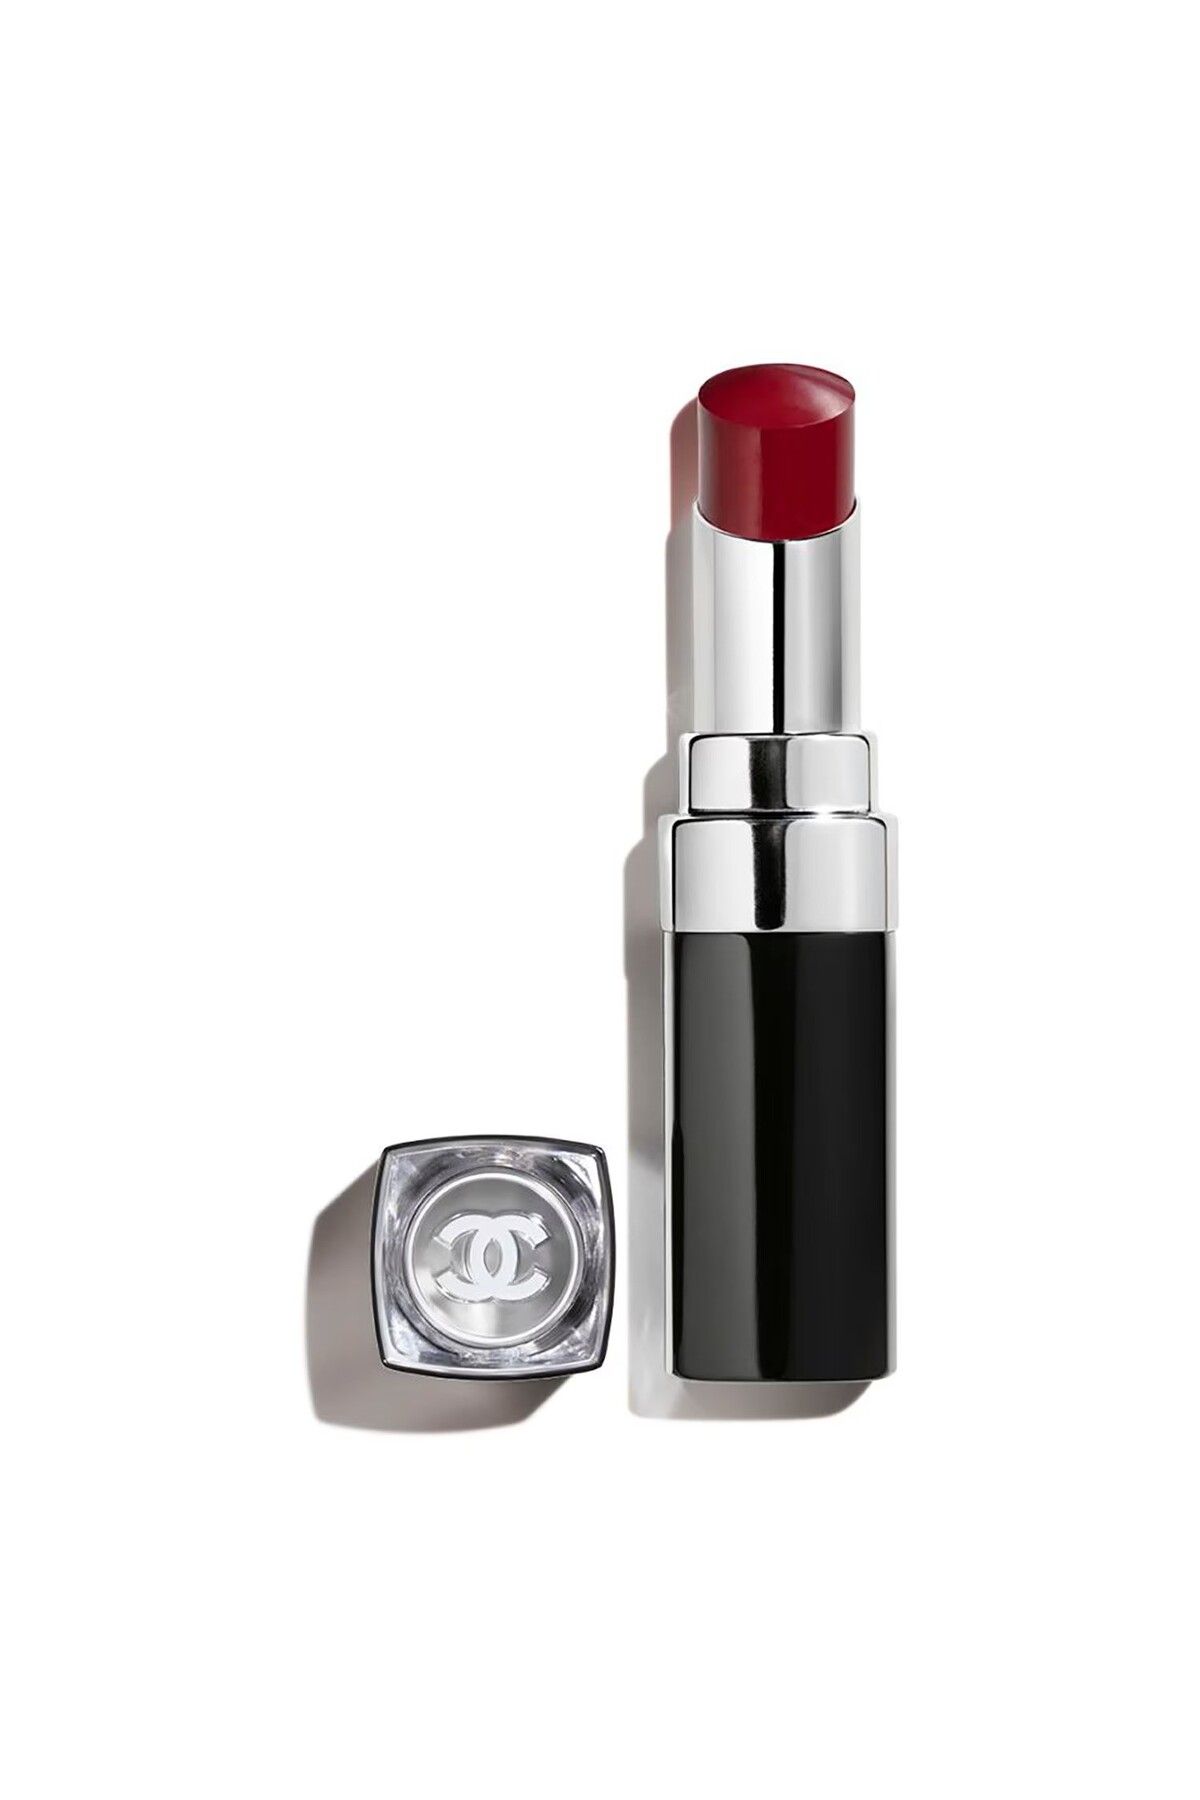 Chanel رژ لب مرطوب کننده، حجیم، قوی، ماندگار و براق COCO BLOOM رنگ قرمز جیگری